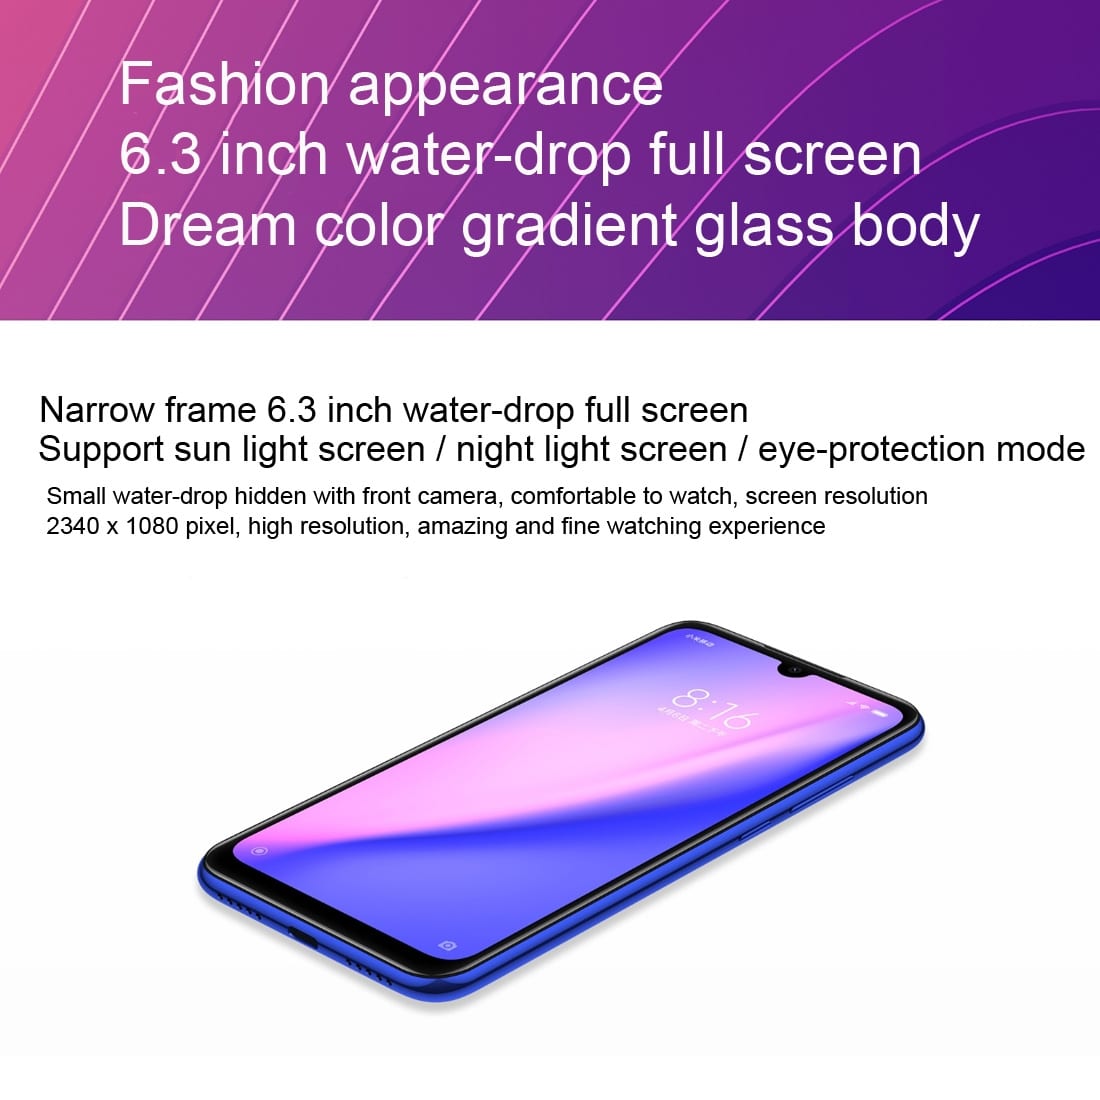 Xiaomi Redmi Note 7 Smartphone